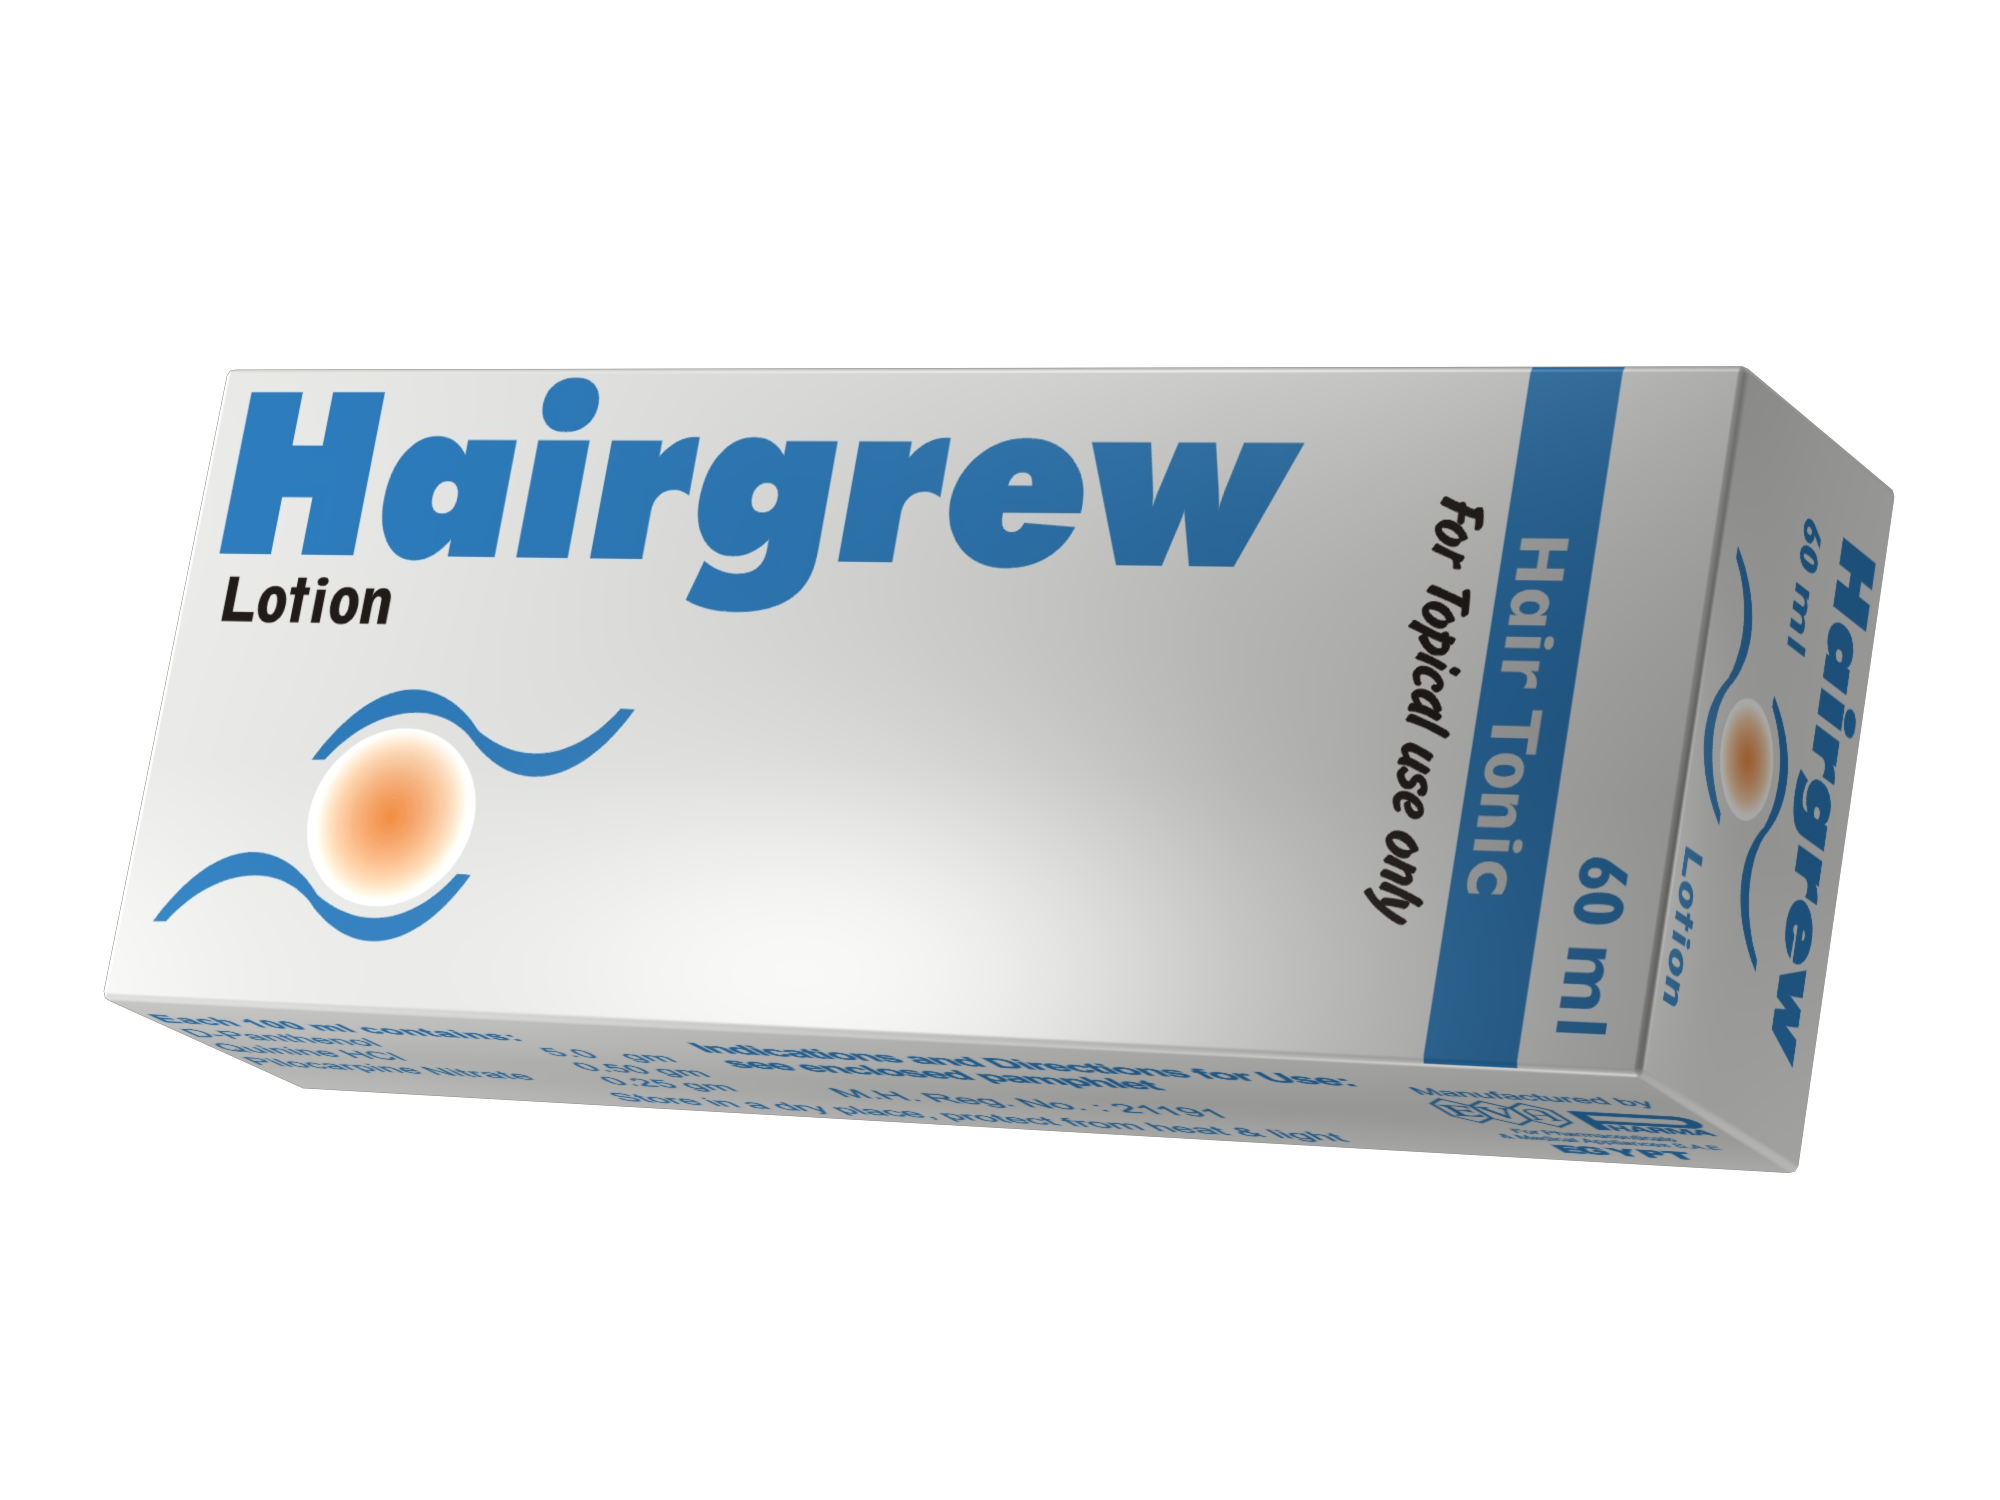 هيرجرو لوشن Hairgrew مقوي ومغذي لبصيلات الشعر لعلاج تساقط الشعر والثعلبة